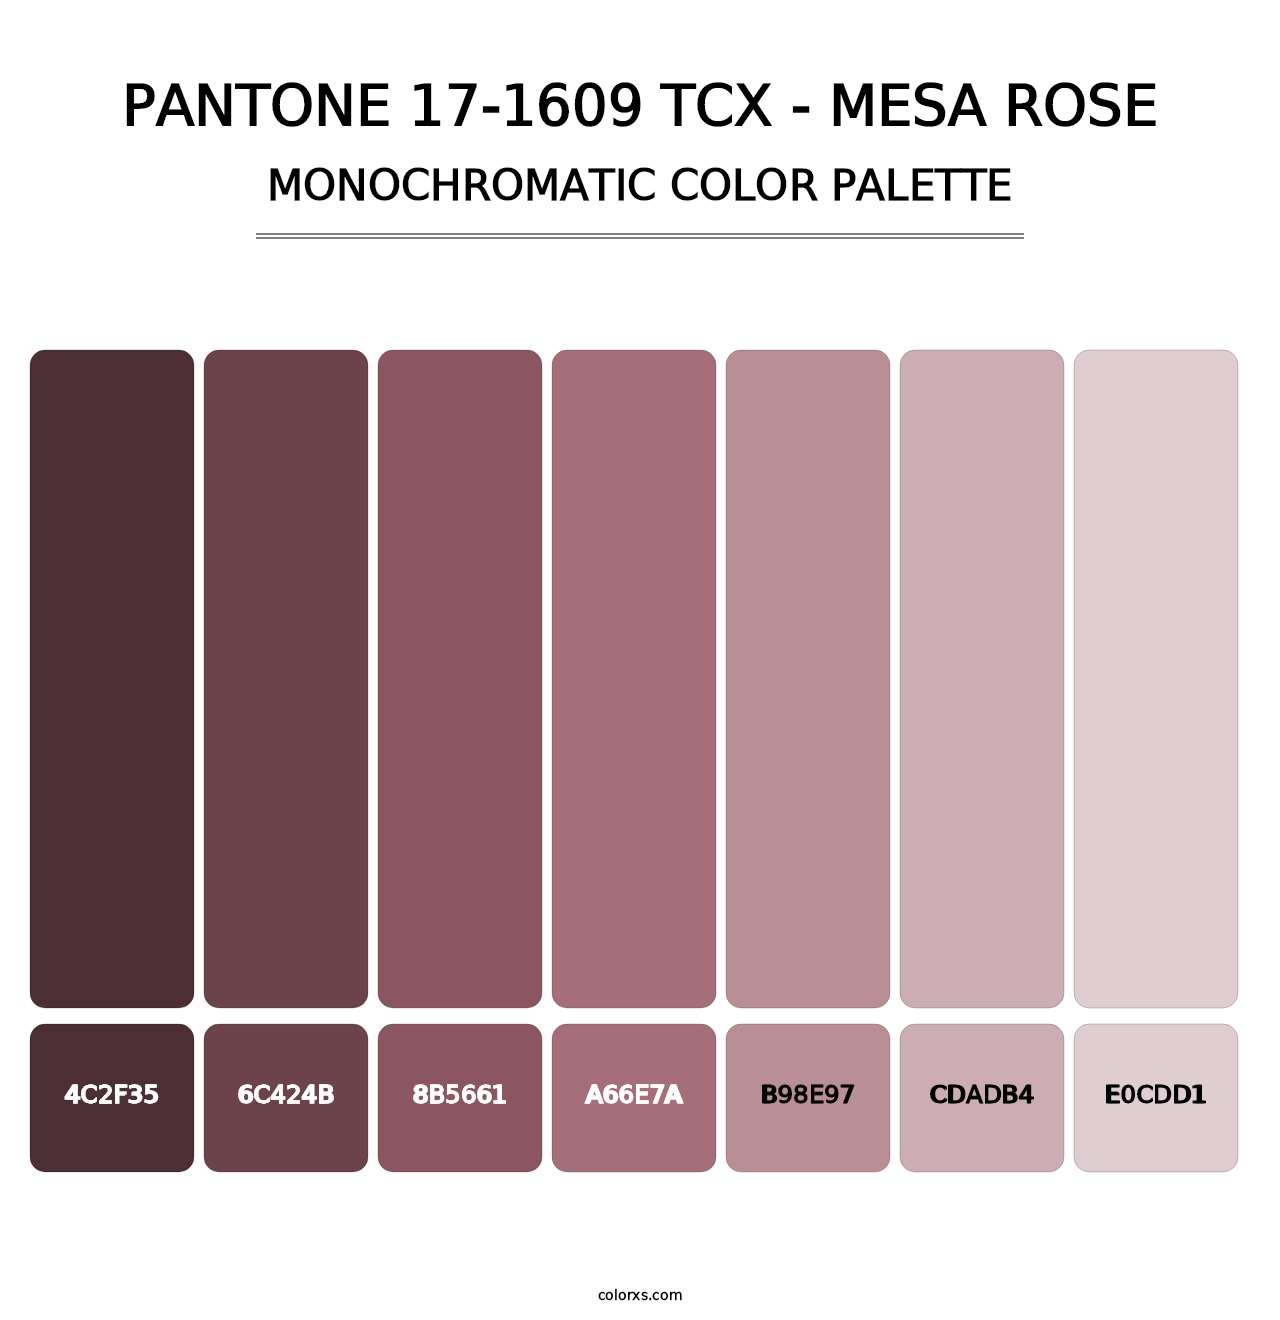 PANTONE 17-1609 TCX - Mesa Rose - Monochromatic Color Palette